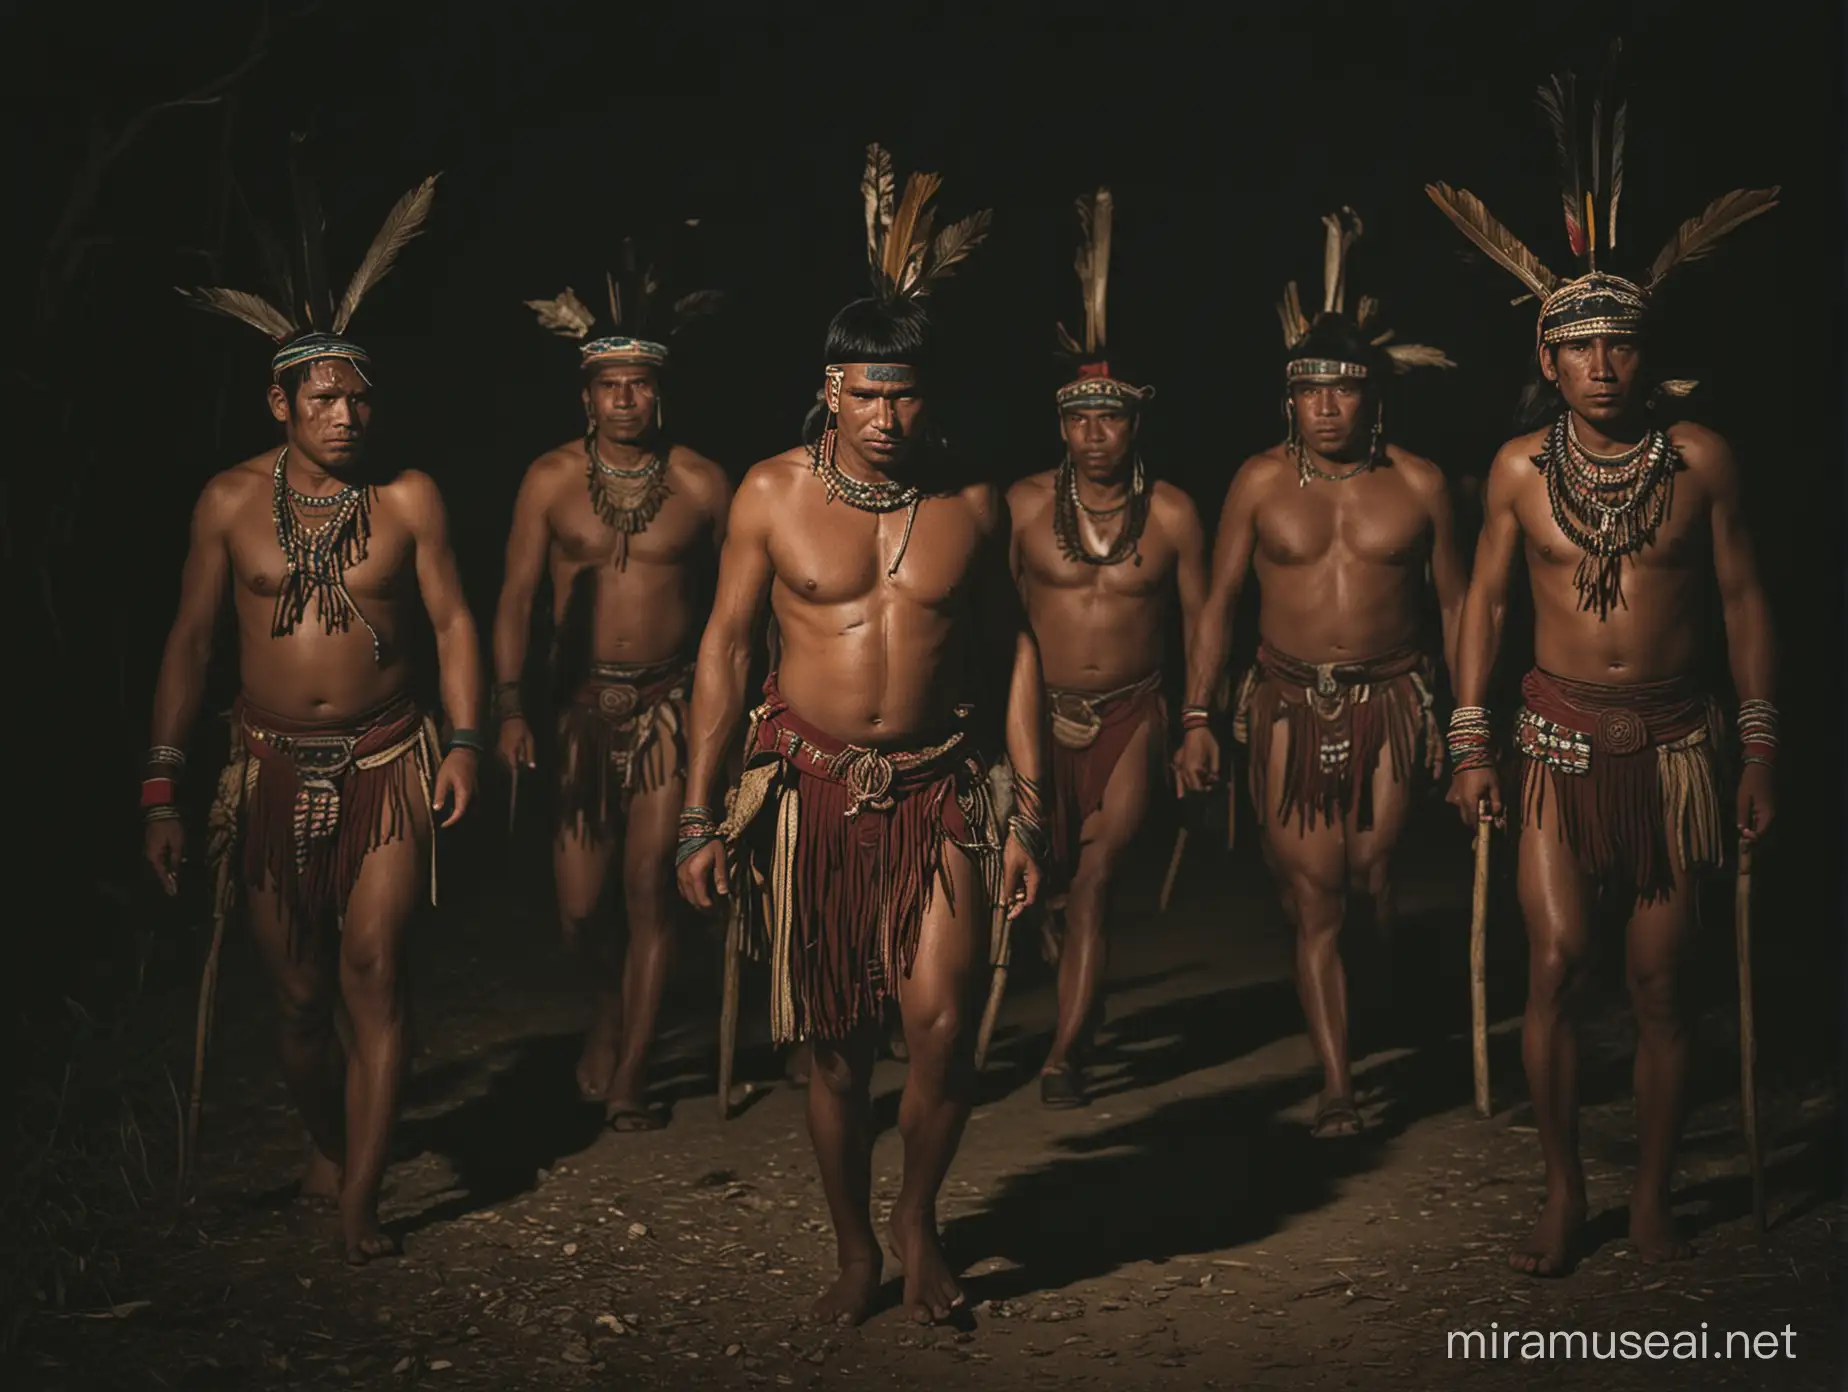 un hombre maya sujetado por otros hombres mayas caminando durante la noche oscura